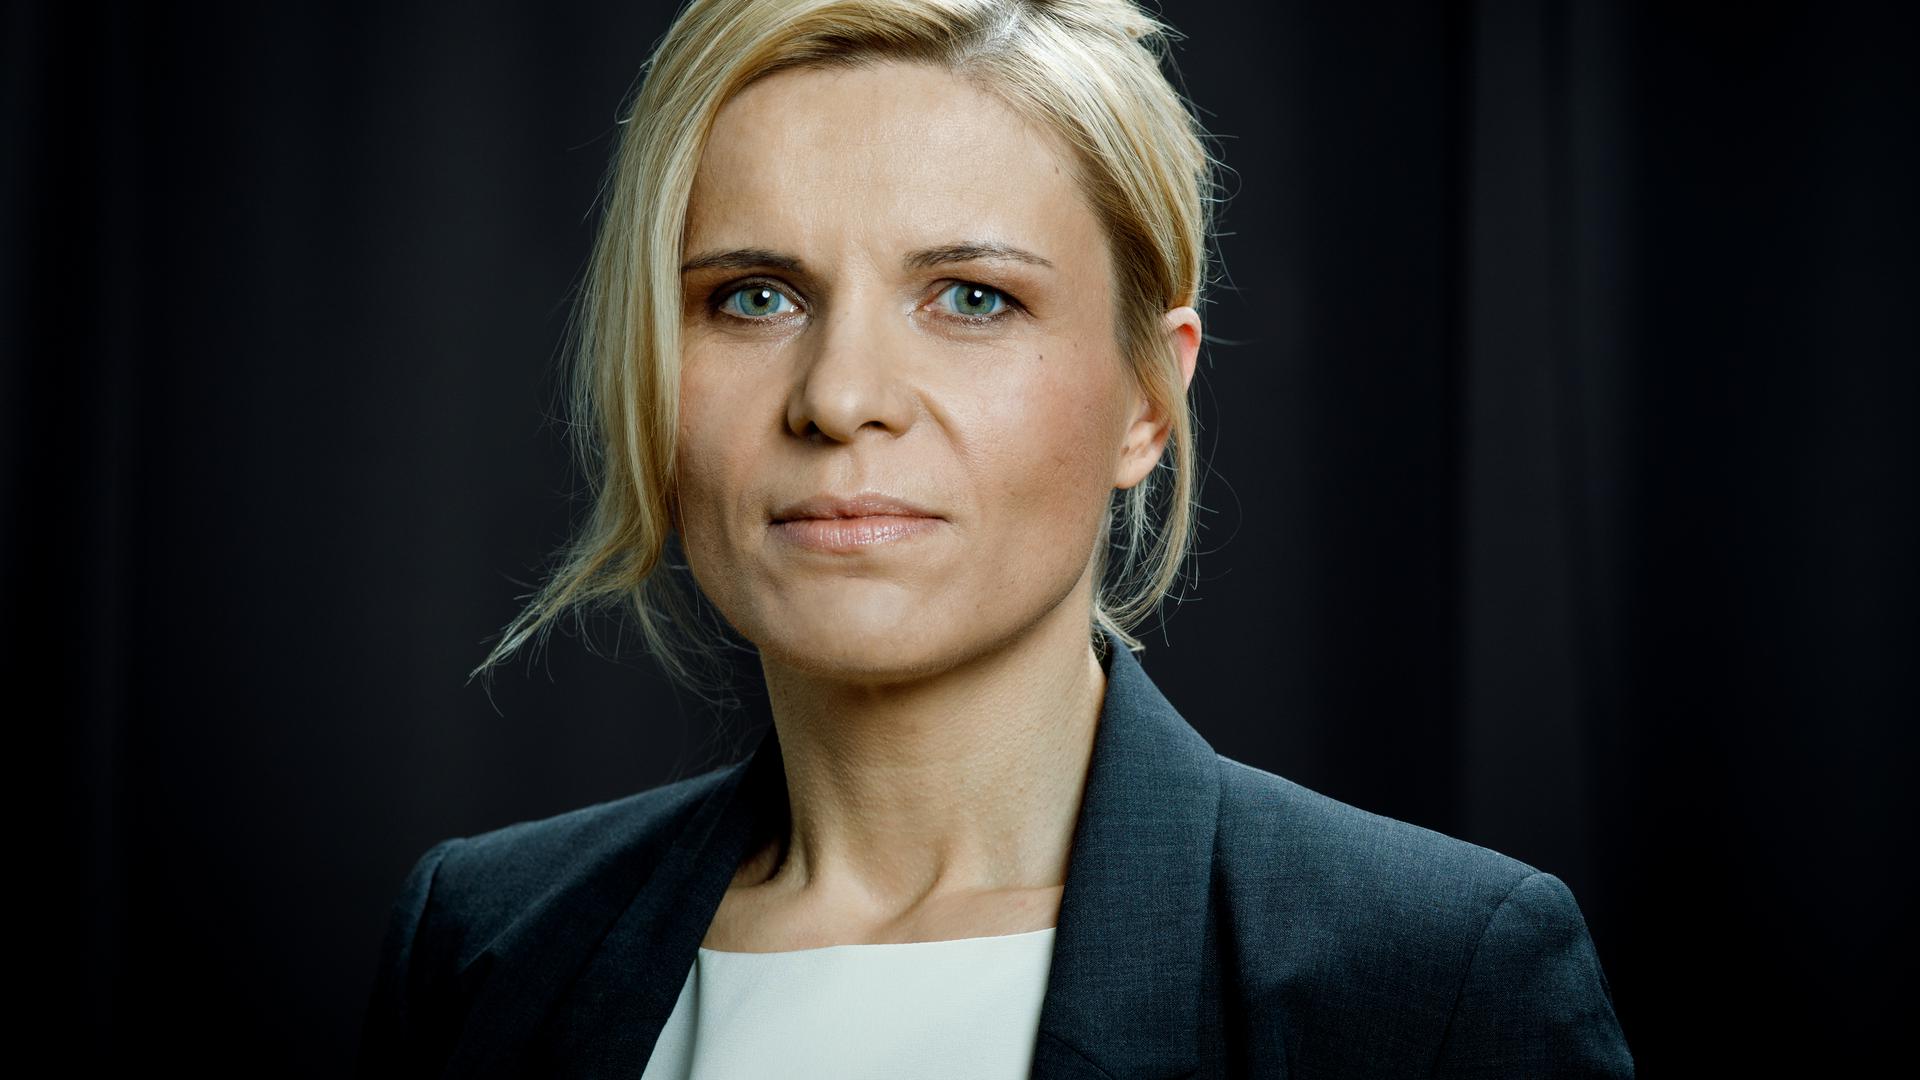 Neue Kulturamtsleiterin der Stadt Karlsruhe wird Dominika Szope, Wahl durch Gemeinderat am 28.07.2021